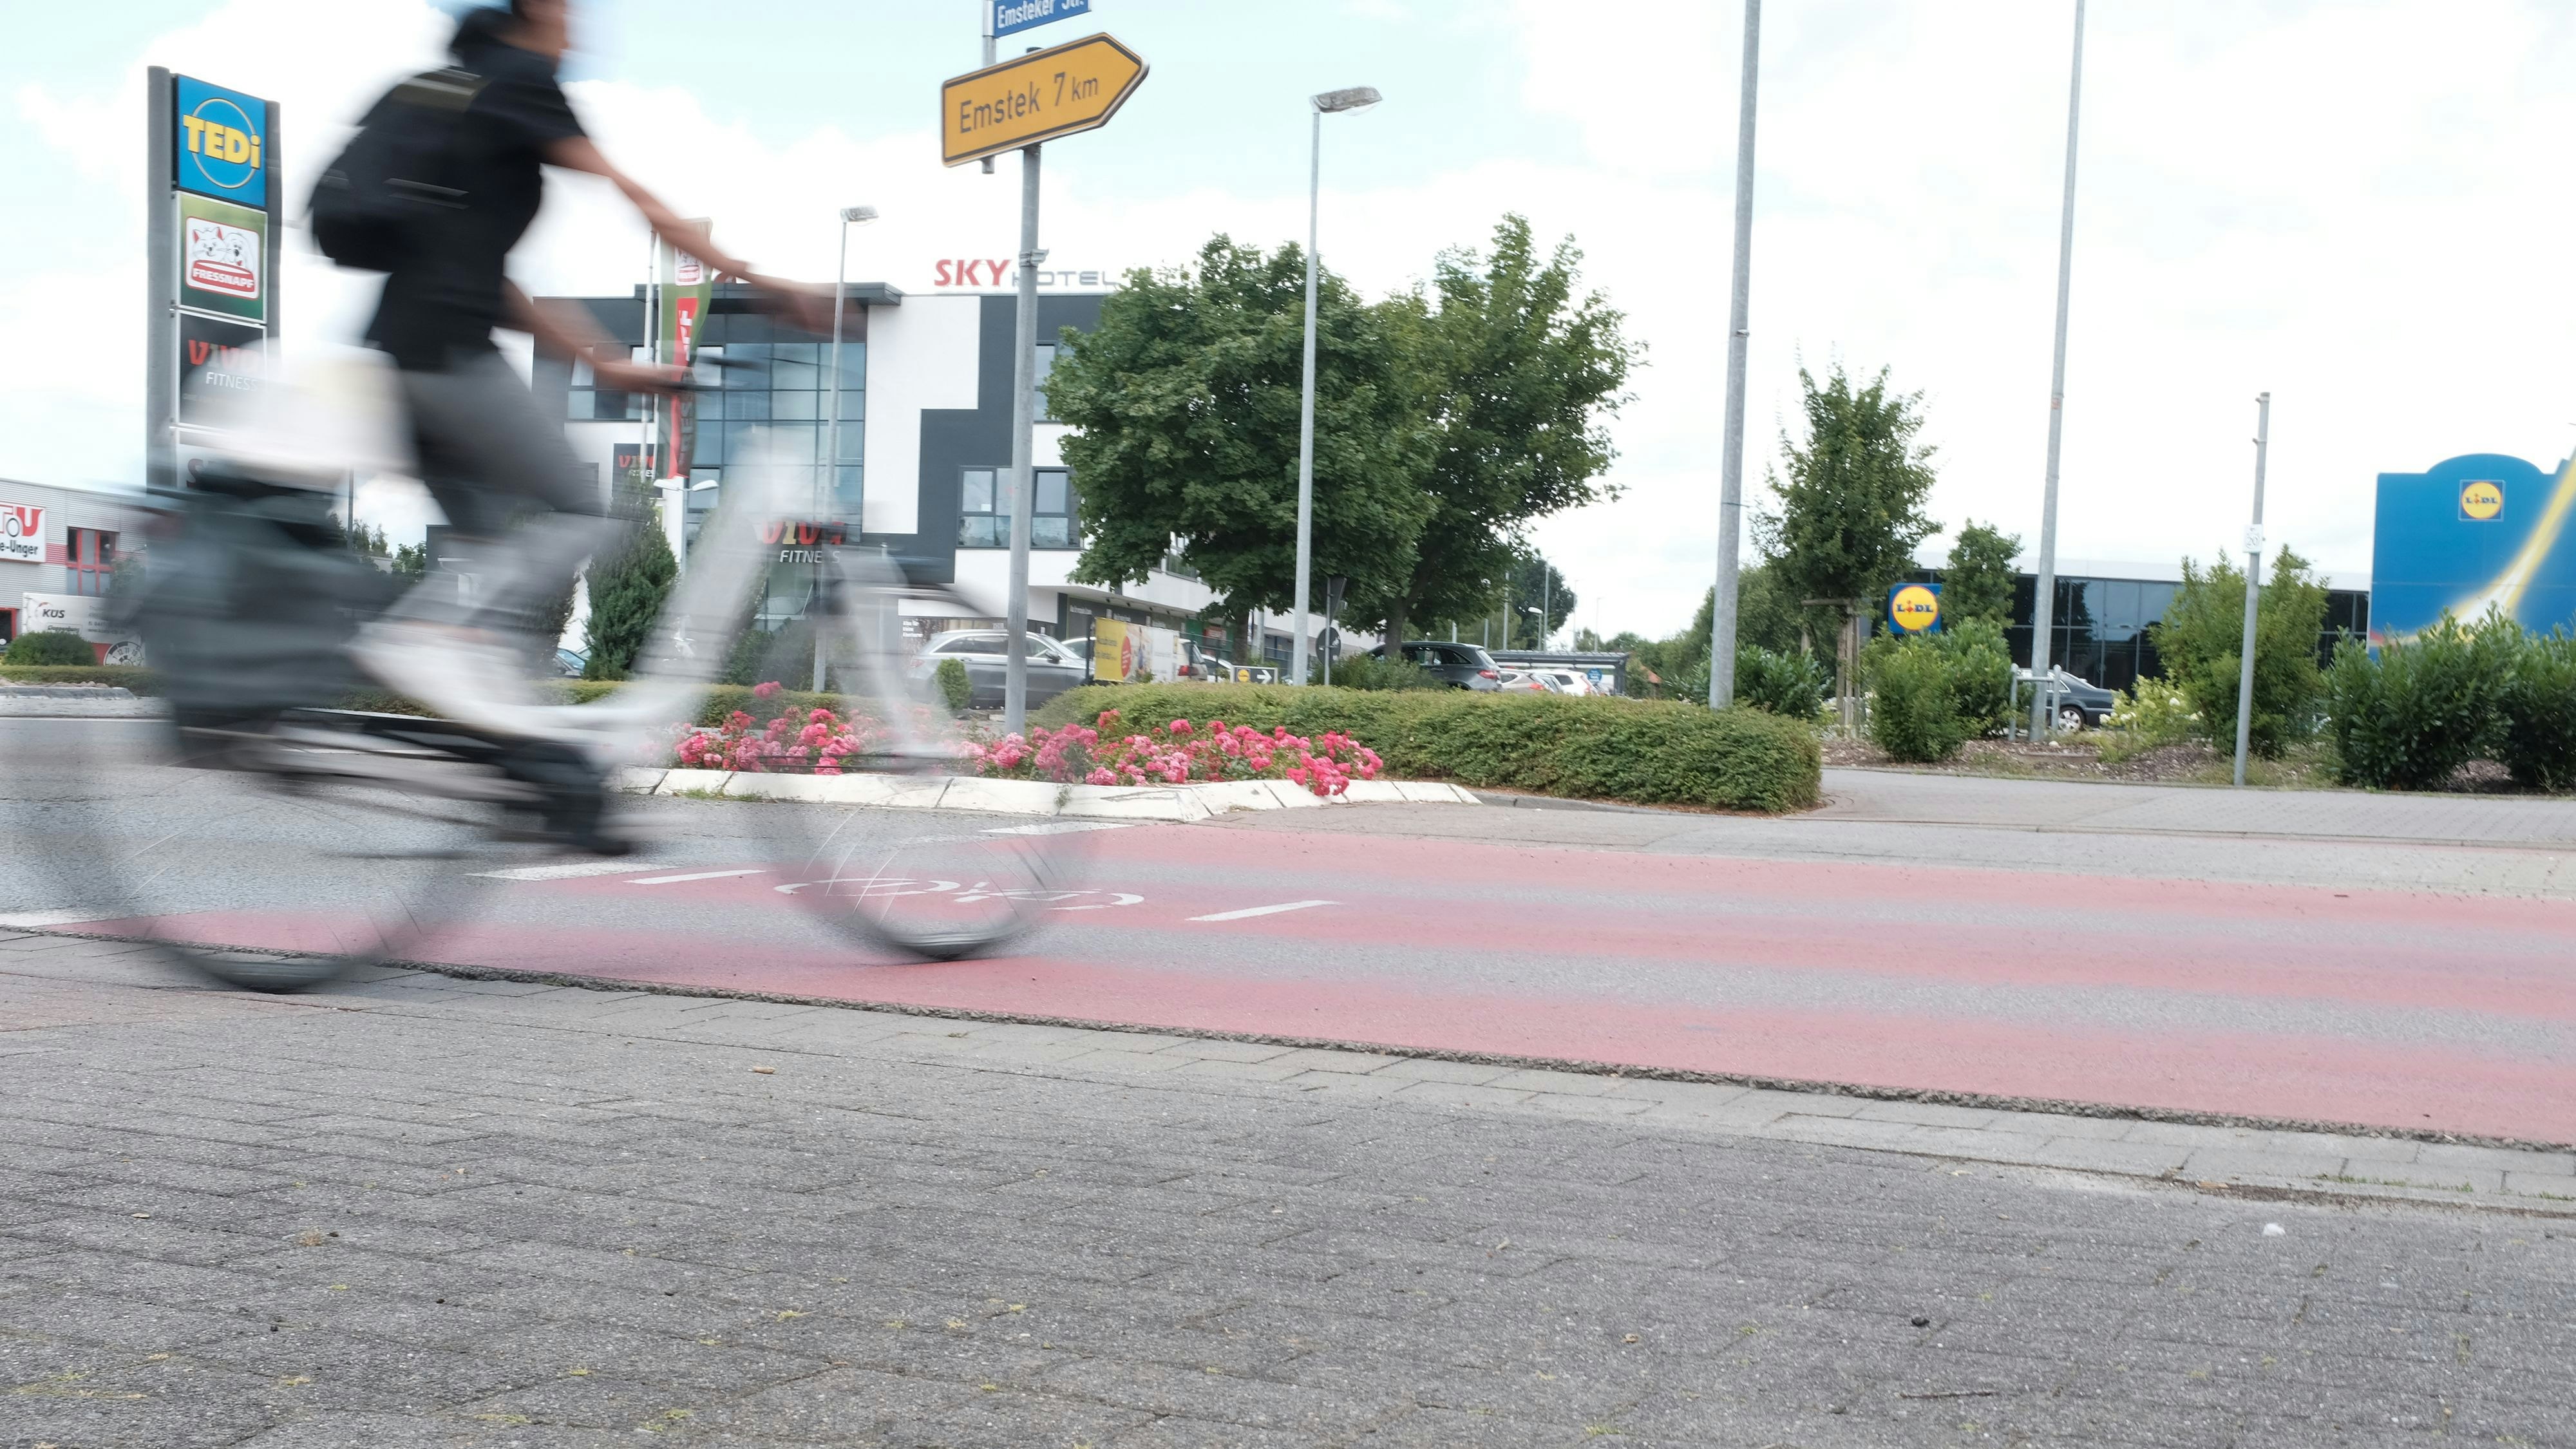 Kreisel gehören zu den Gefahrenstellen: Am Lidl-Kreisel an der Emsteker Straße verunglücken Radfahrer überdurchschnittlich oft. Foto: Niemeyer